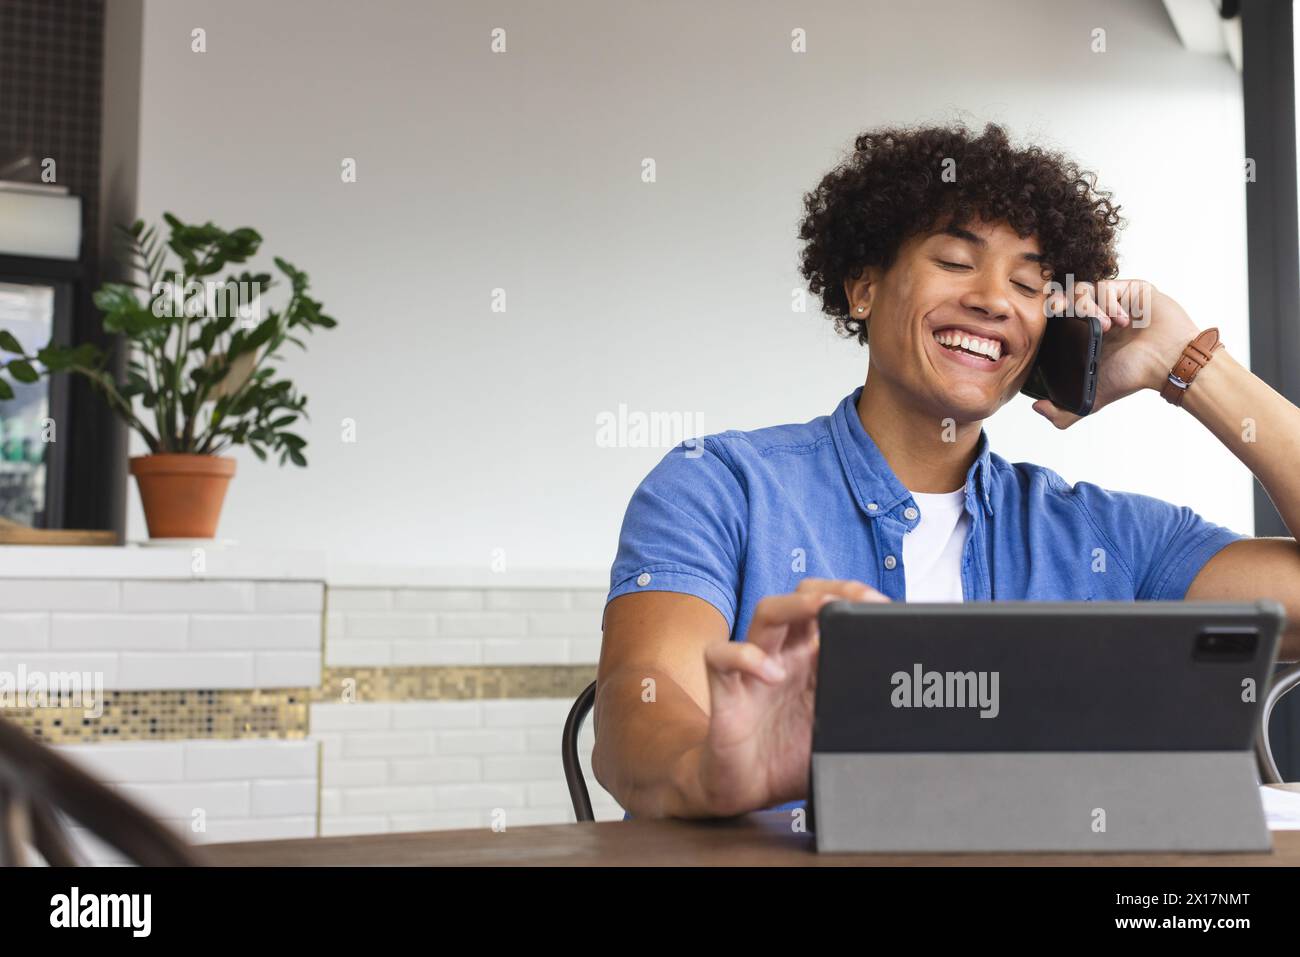 Un giovane uomo birazziale che indossa una camicia blu parla al telefono in un moderno ufficio aziendale. Ha i capelli ricci neri, sta usando una tavoletta, e ha una j Foto Stock